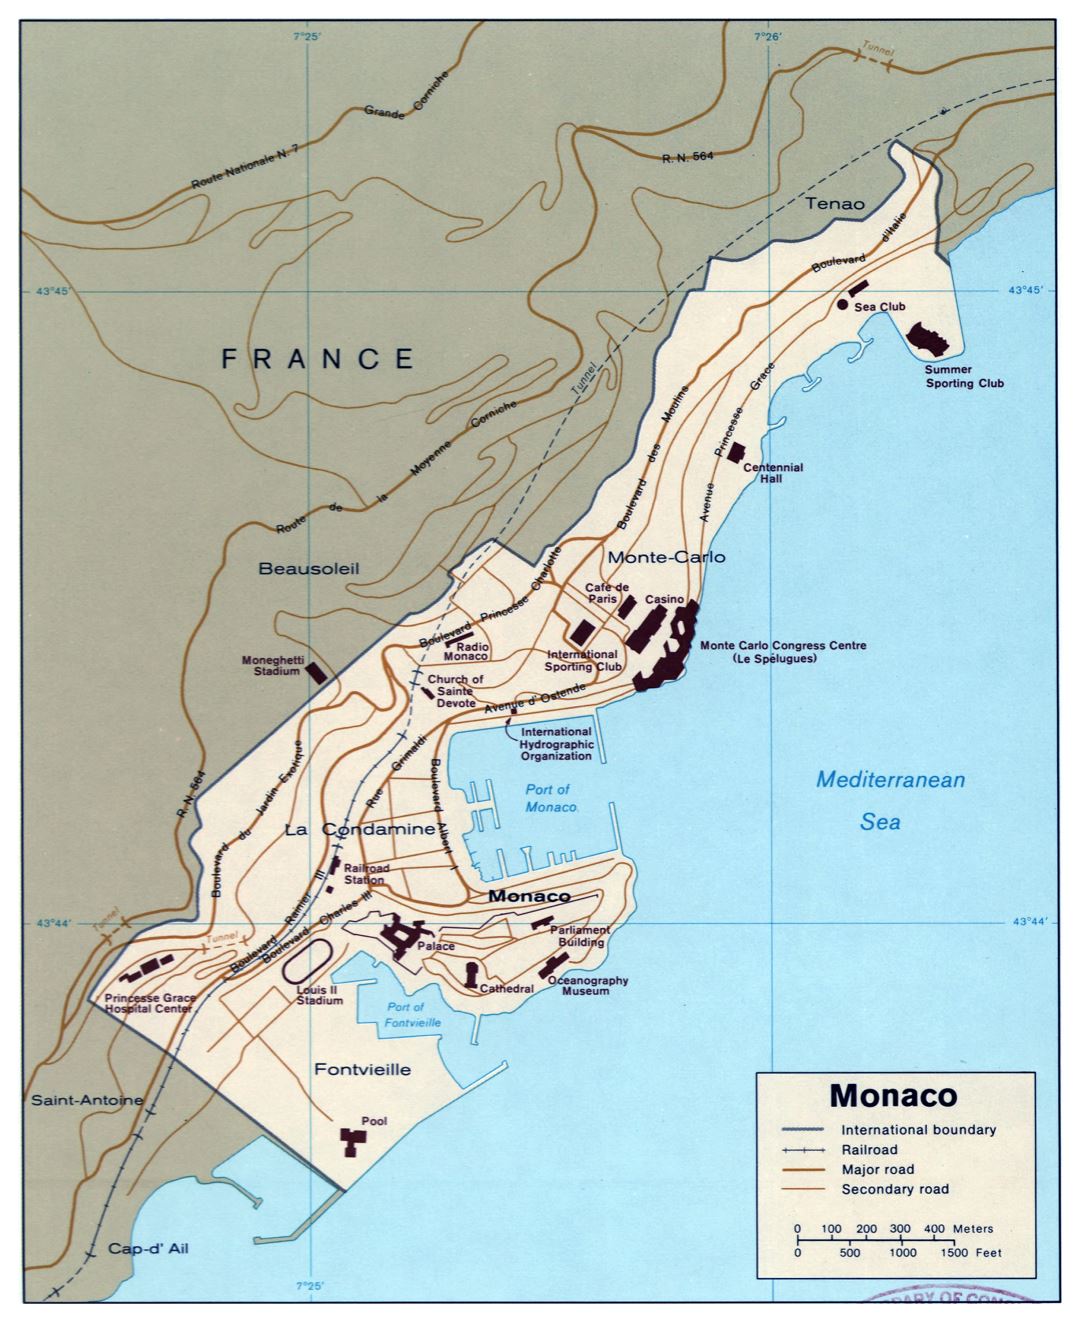 A gran escala mapa político de Mónaco con carreteras y vías férreas